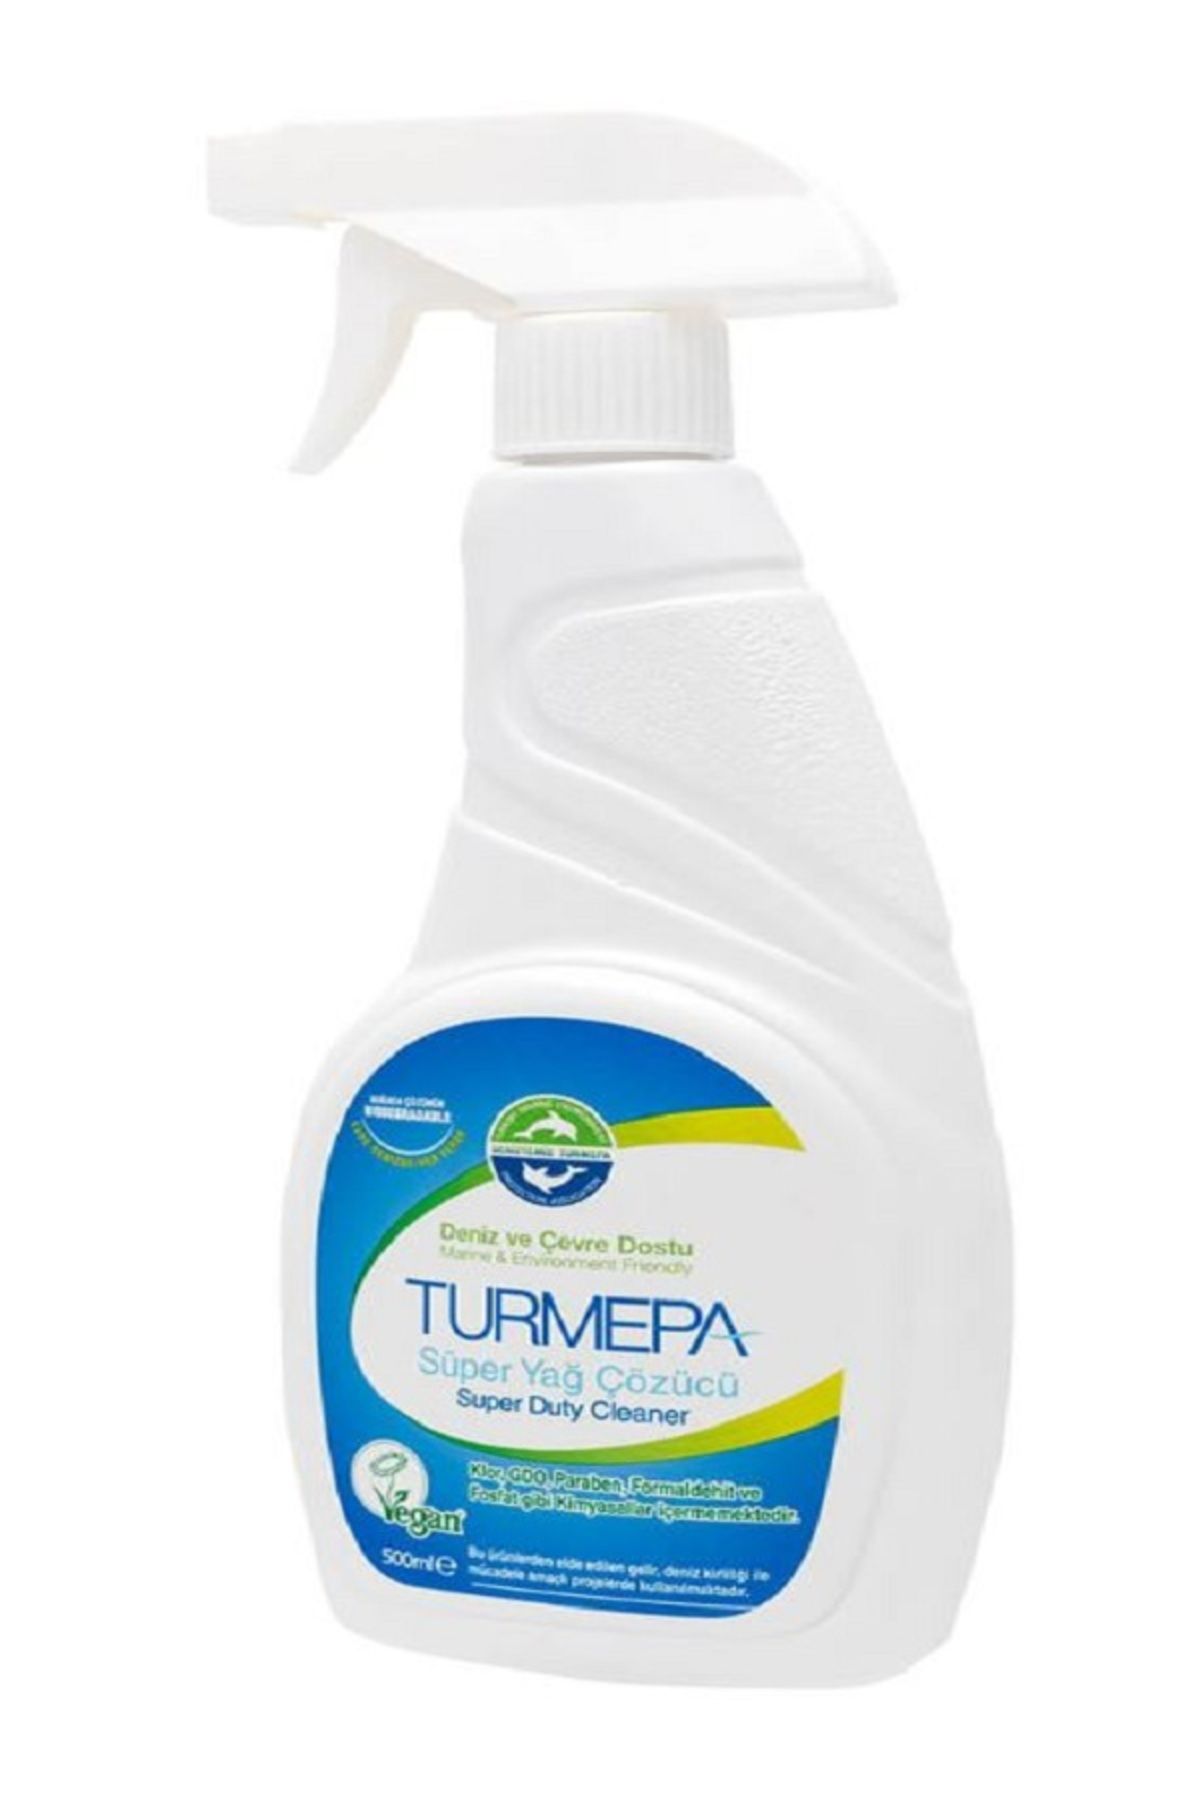 Turmepa - Ağır Yağ Çözücü - 500 ml ( 3 Adet )